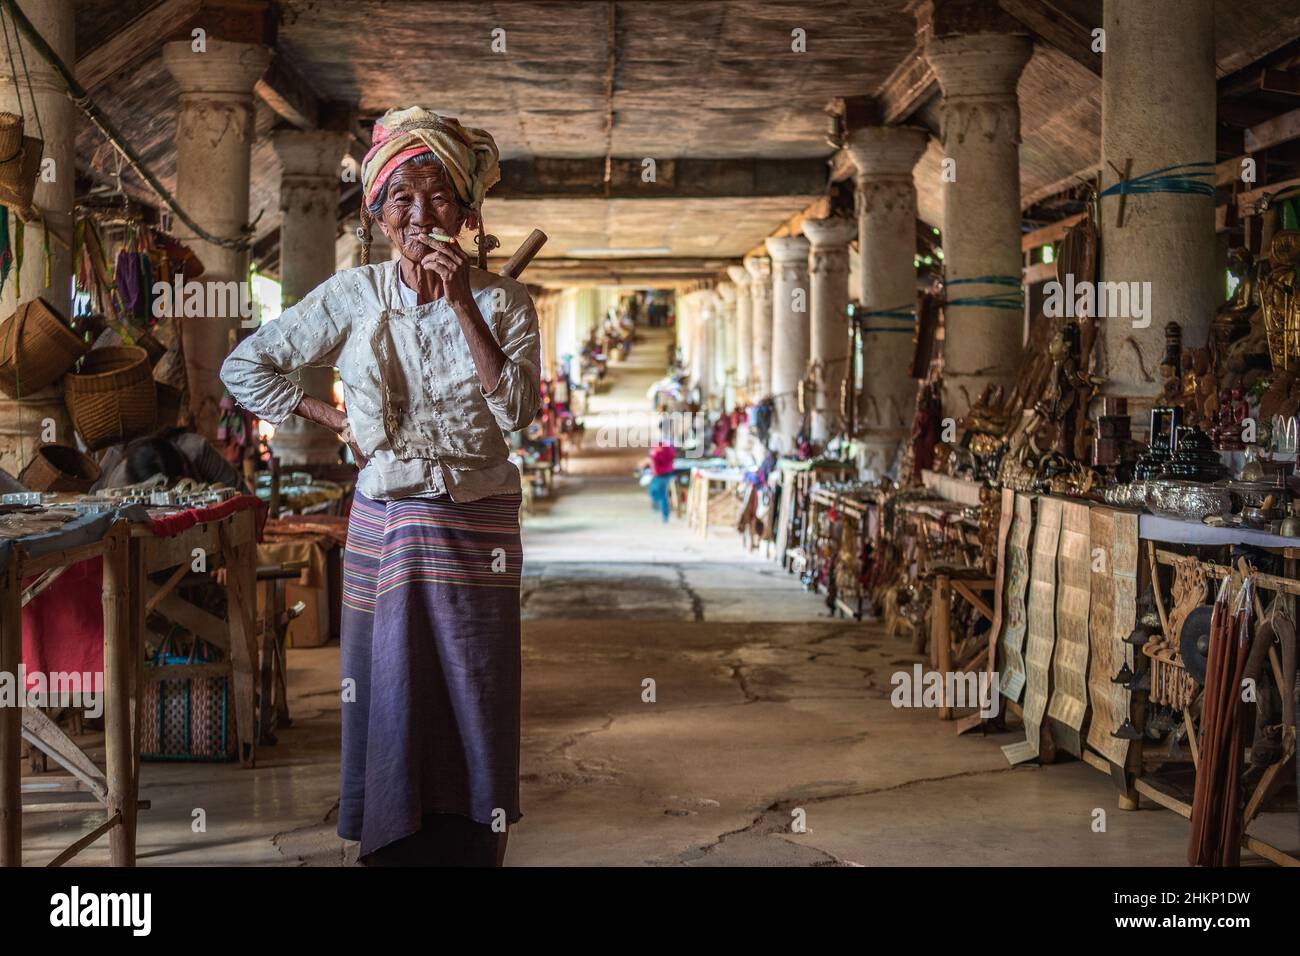 Vecchia signora birmana che fuma un sigaro al tradizionale mercato dell'artigianato nel villaggio di Indein, Stato di Shan, Myanmar (Birmania). Foto Stock